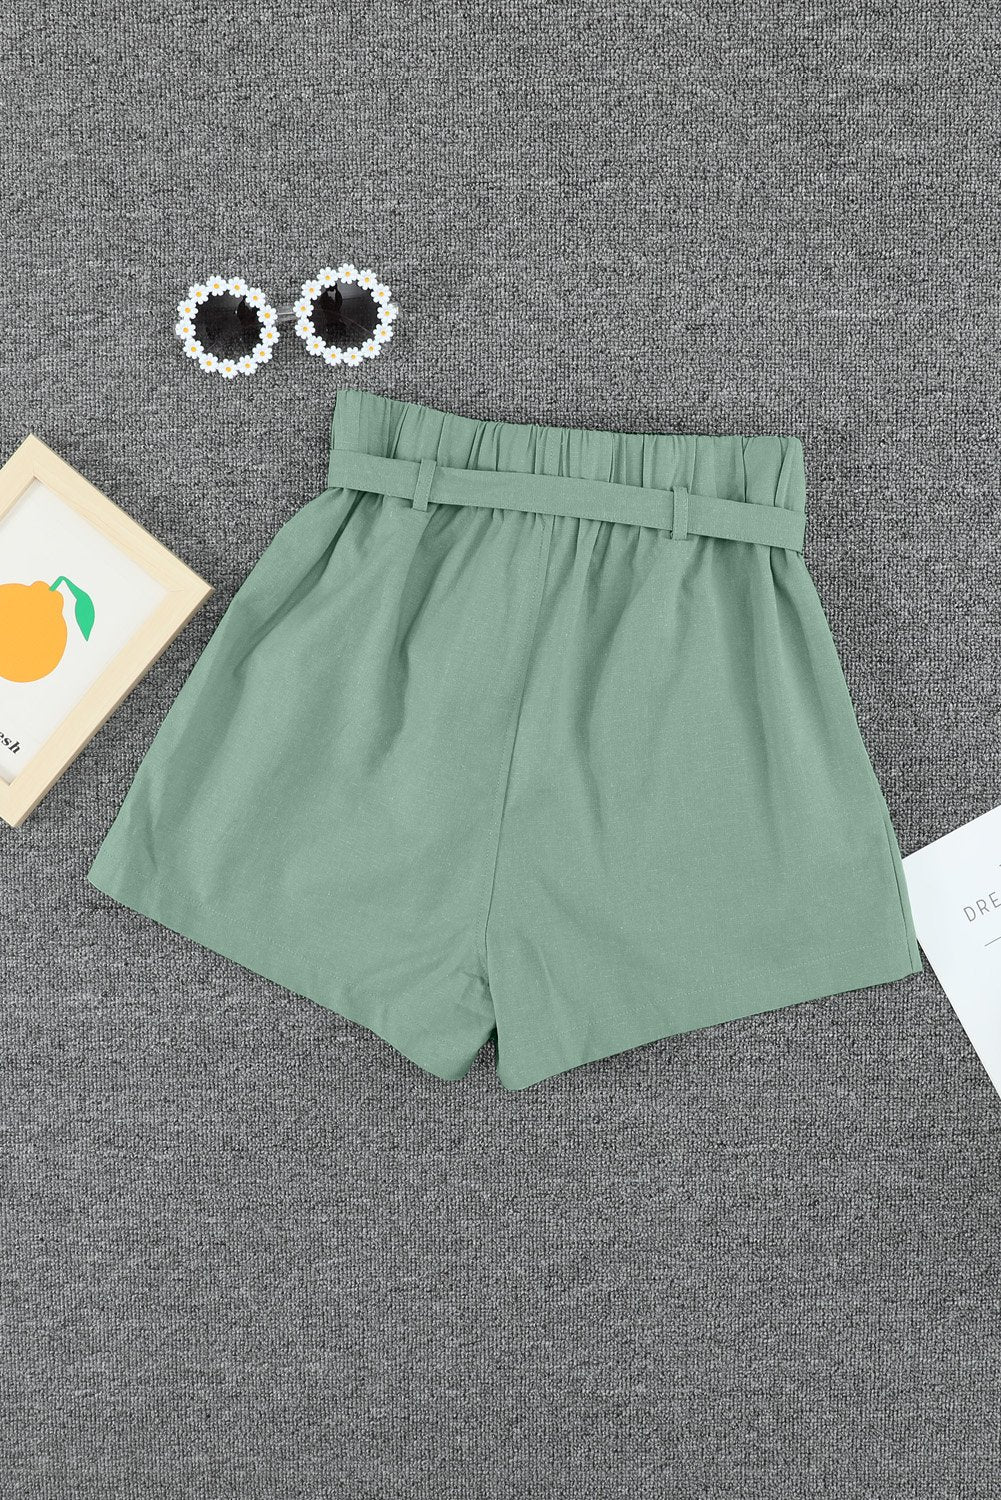 SheHori - Green Tie Waist Casual Shorts streetwear fashion, outfit, versatile fashion shehori.com